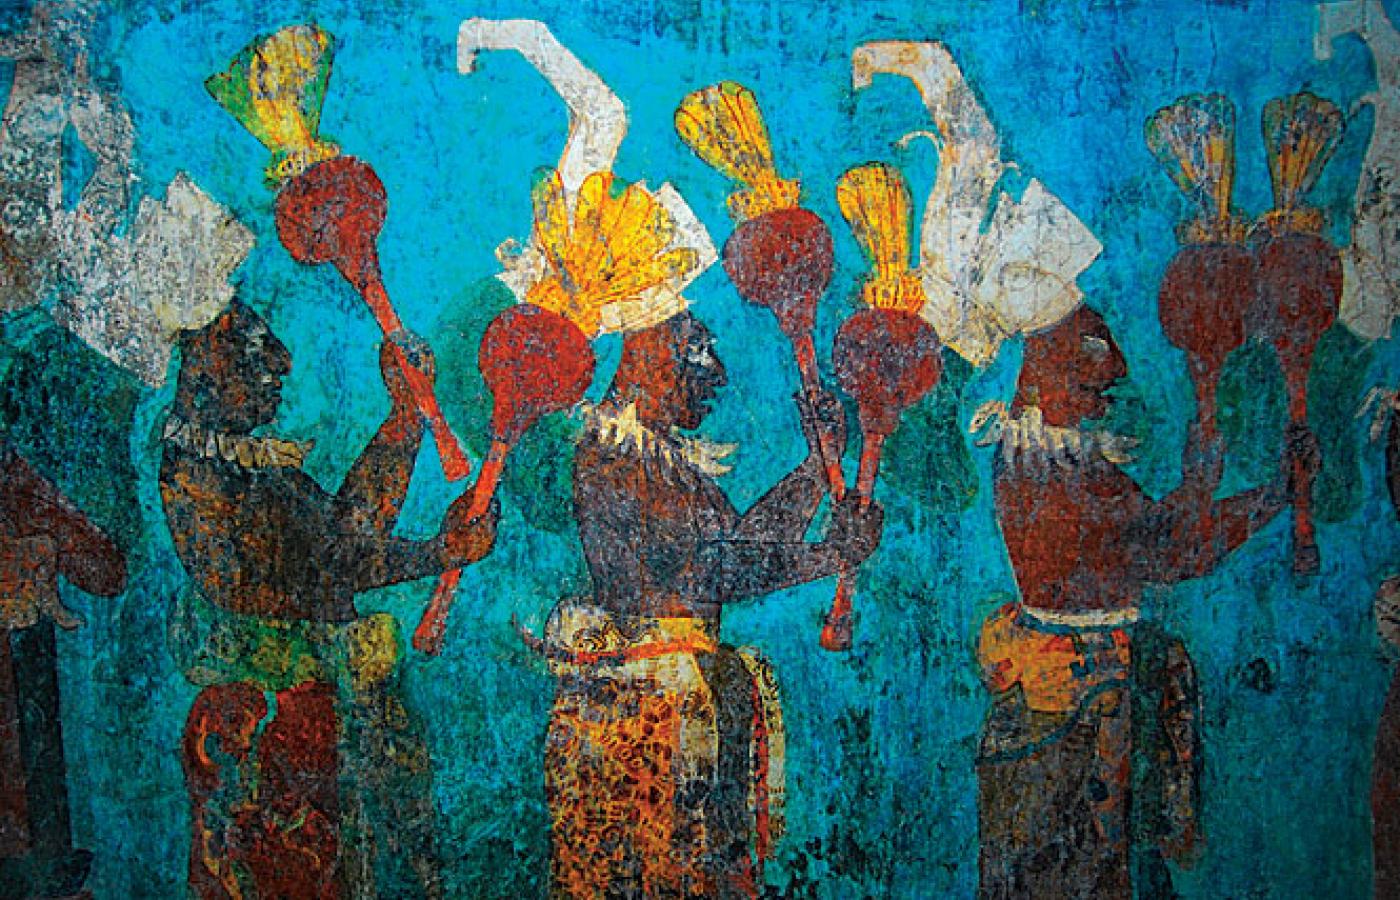 onampak, Chiapas – malowidło ścienne przedstawiające procesję muzyków z grzechotkami. Każdy z nich ma indywidualny strój z barwnej i wzorzystej tkaniny.